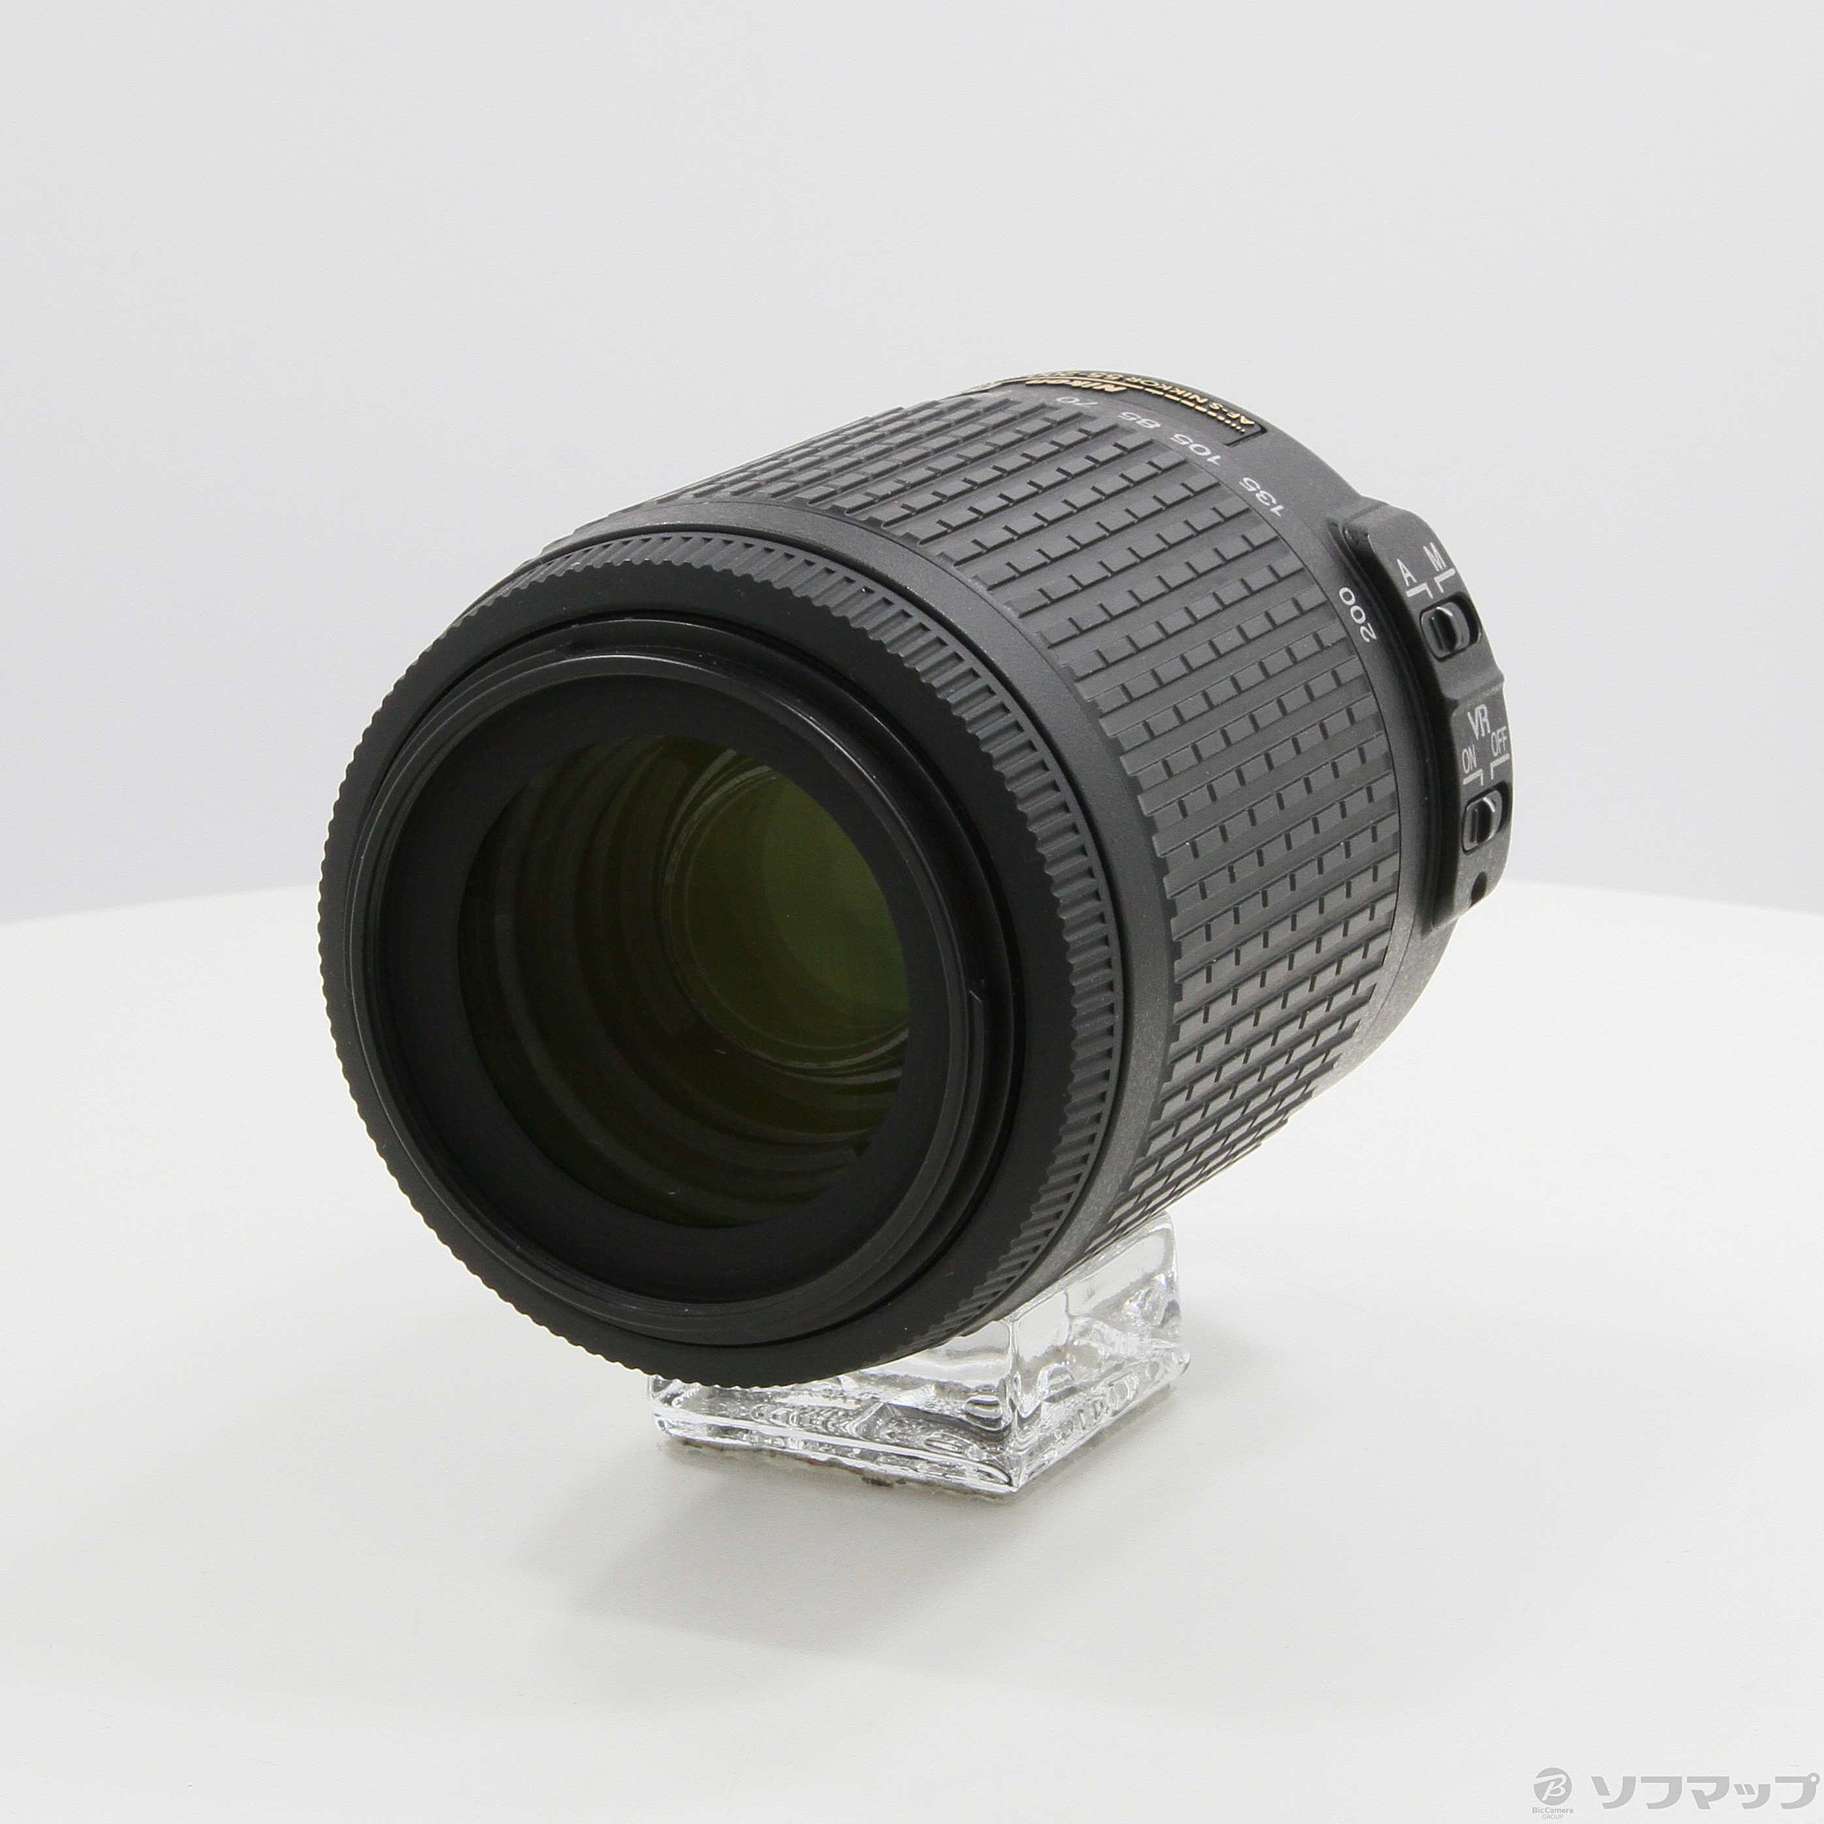 中古】セール対象品 Nikon AF-S DX VR Zoom-Nikkor ED 55-200mm F4-5.6